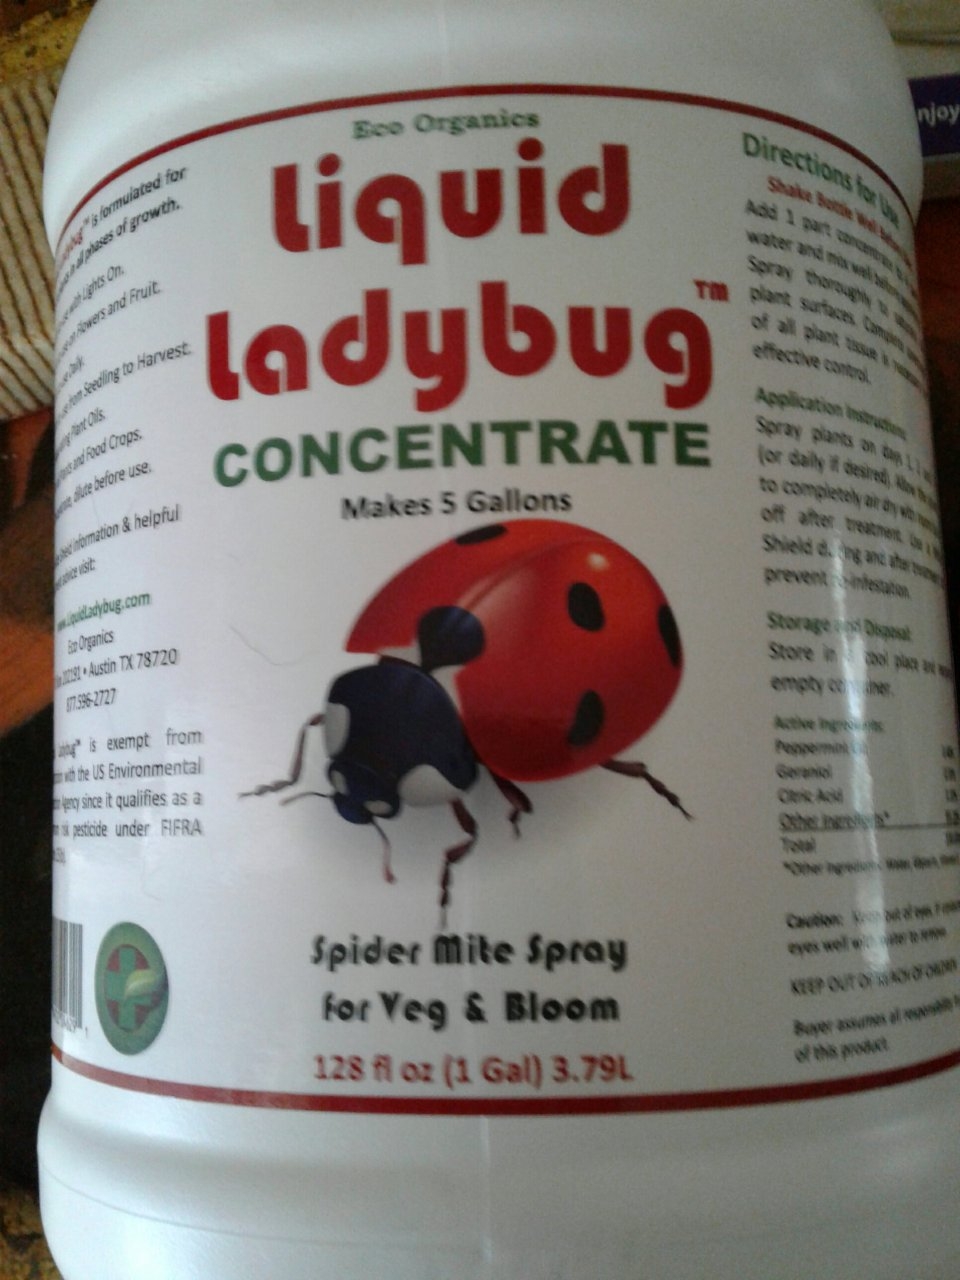 Liquid Ladybug